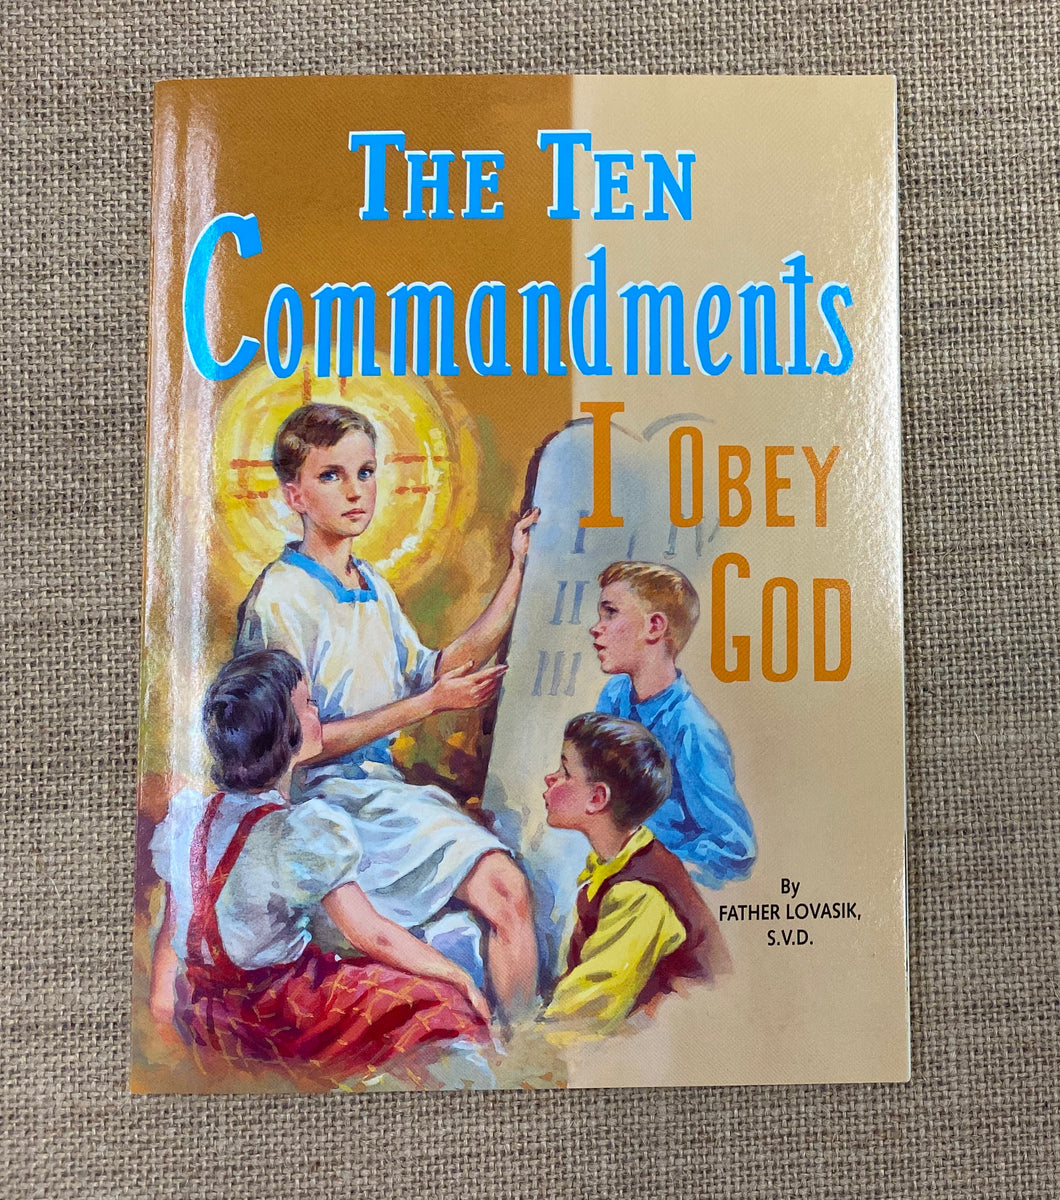 The Ten Commandments - I Obey God